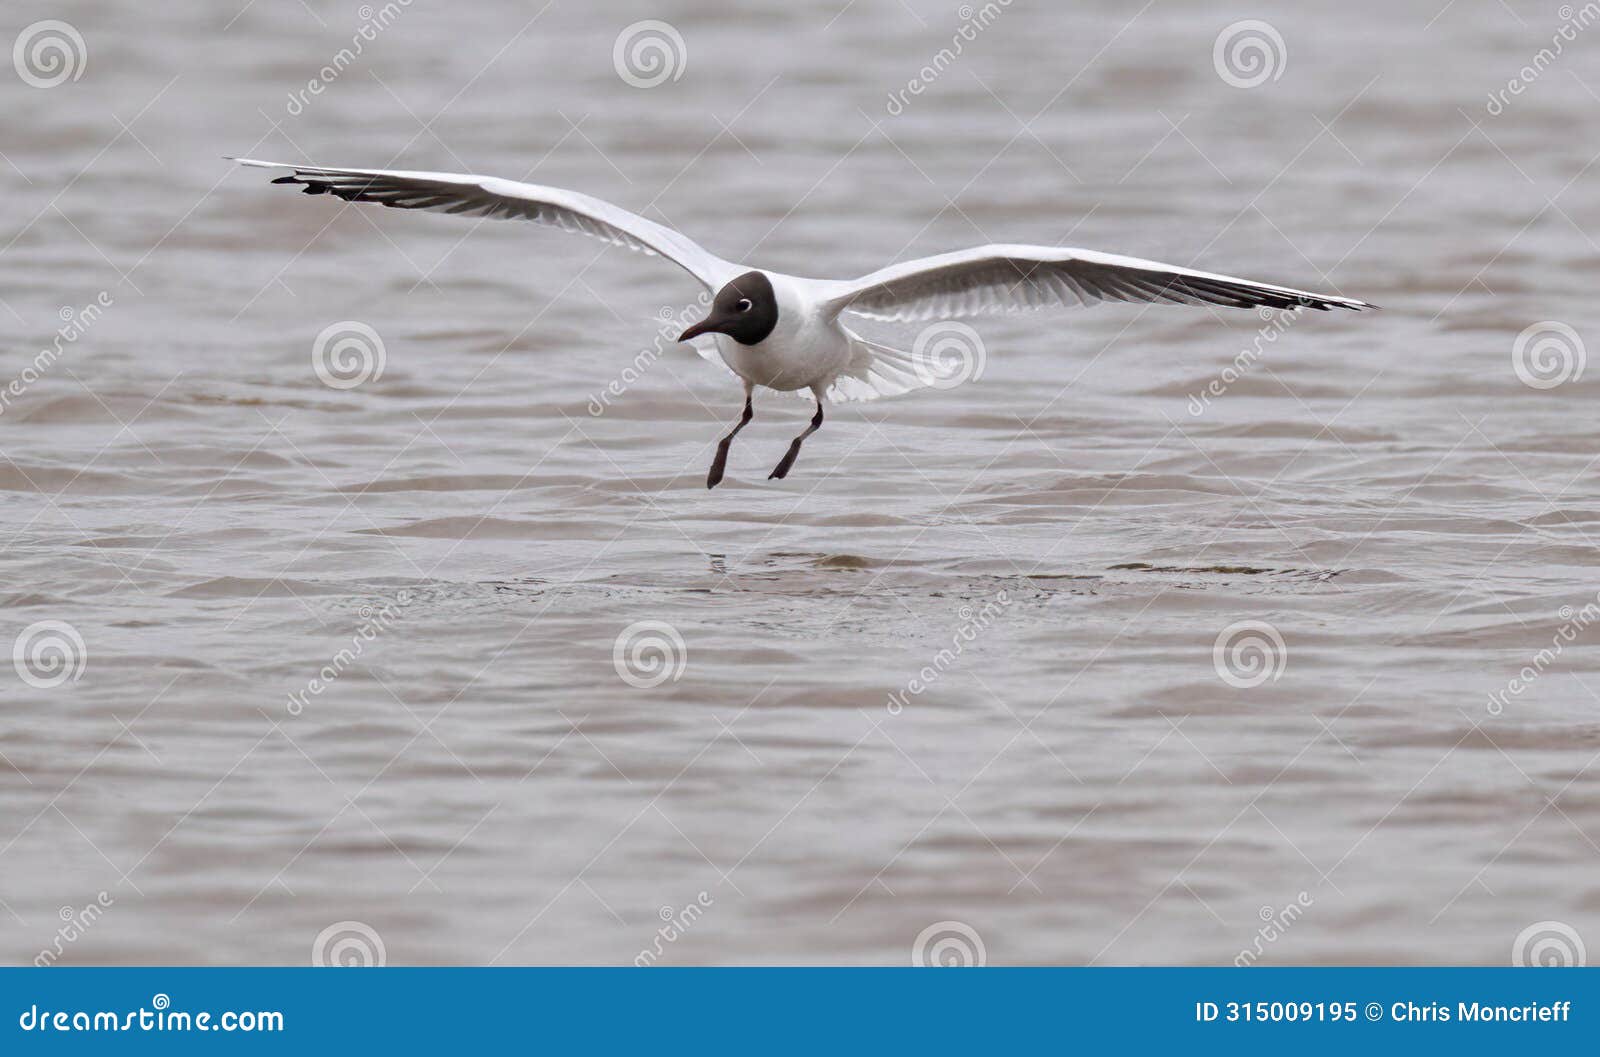 black headed gull landing on water